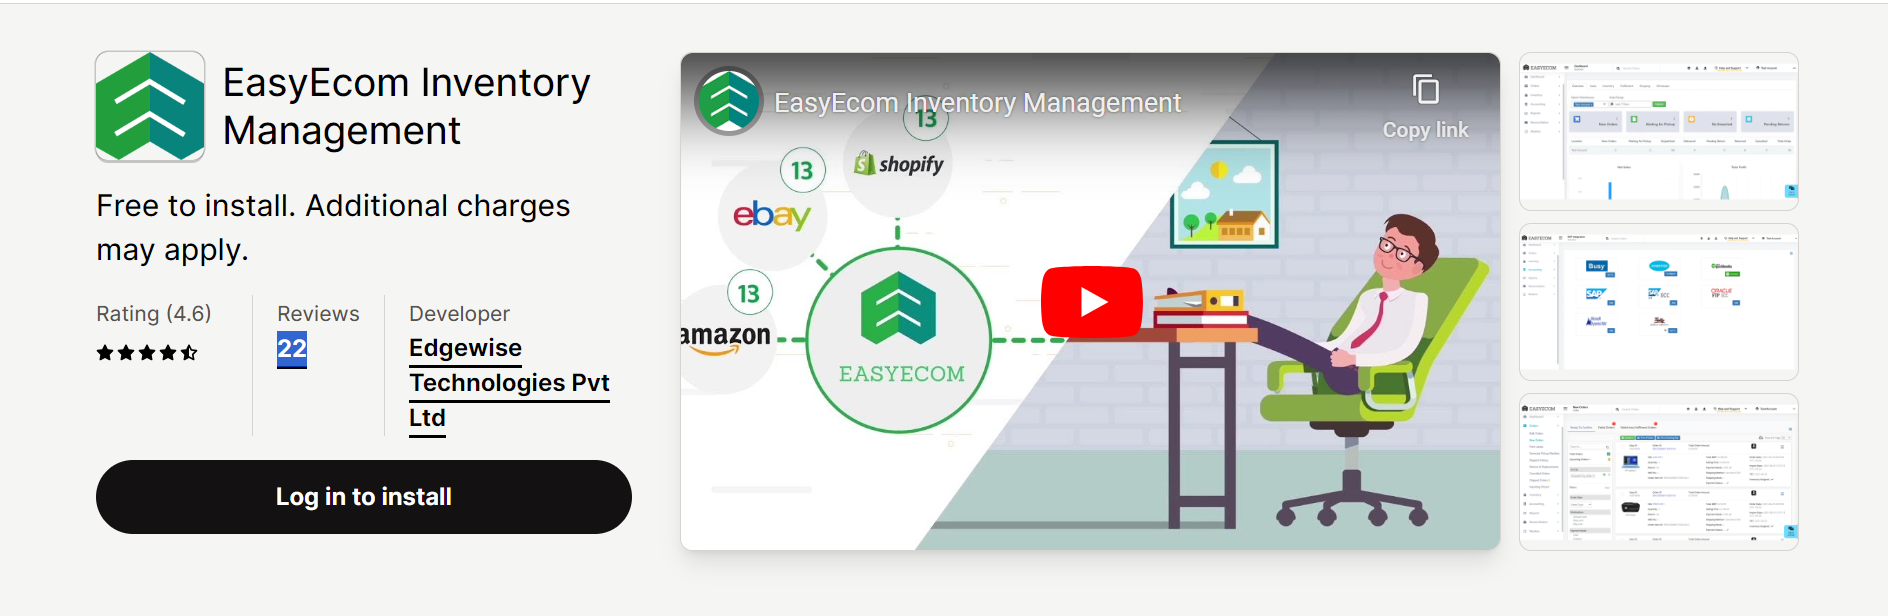 EasyEcom Inventory Management